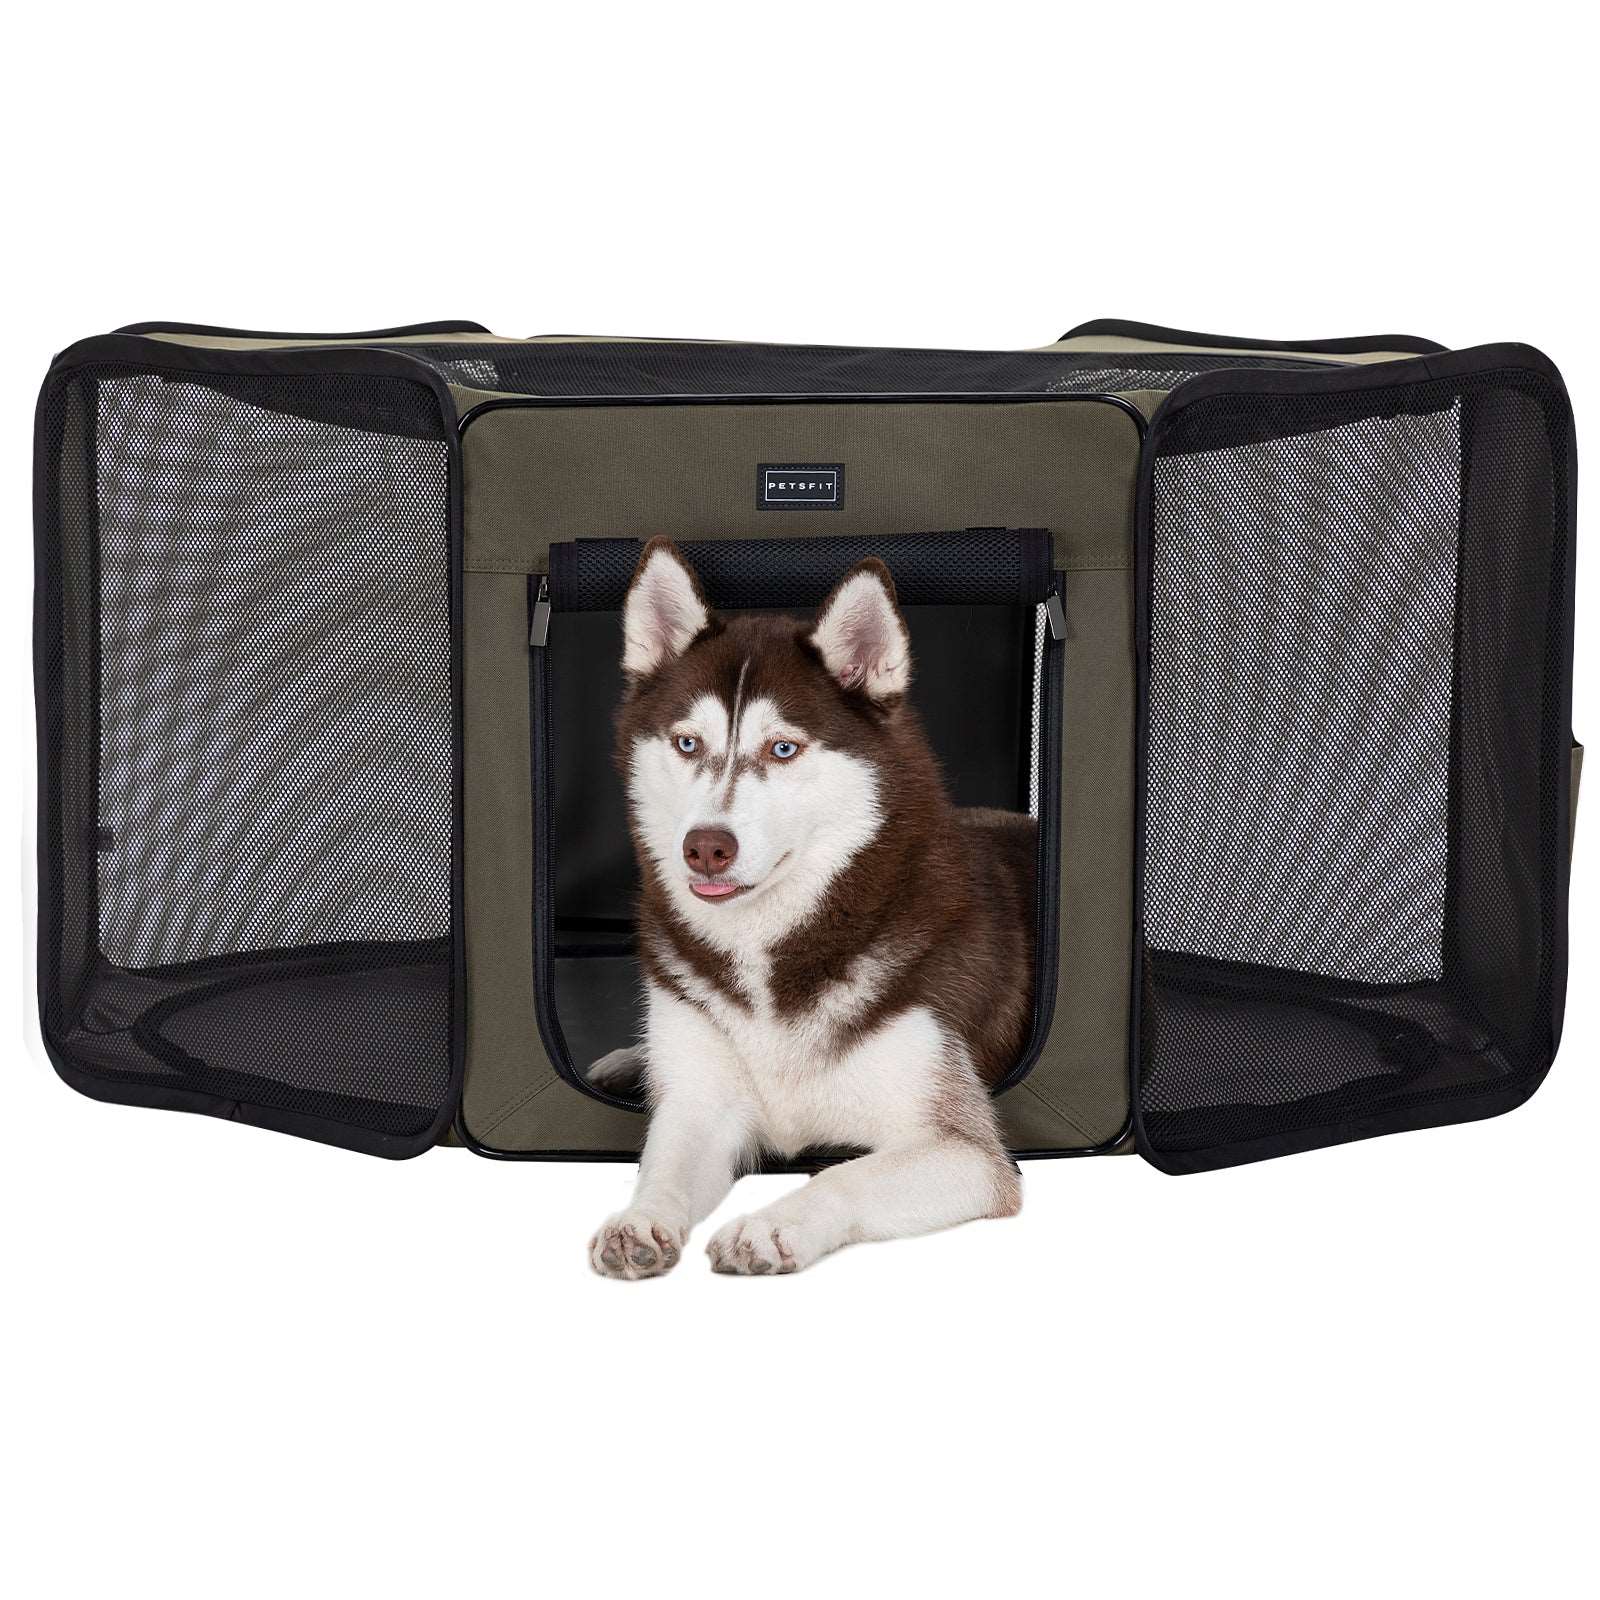 PETSFIT Portable Dog Playpen Indoor Pet Delivery Room Outdoor Pet Tent